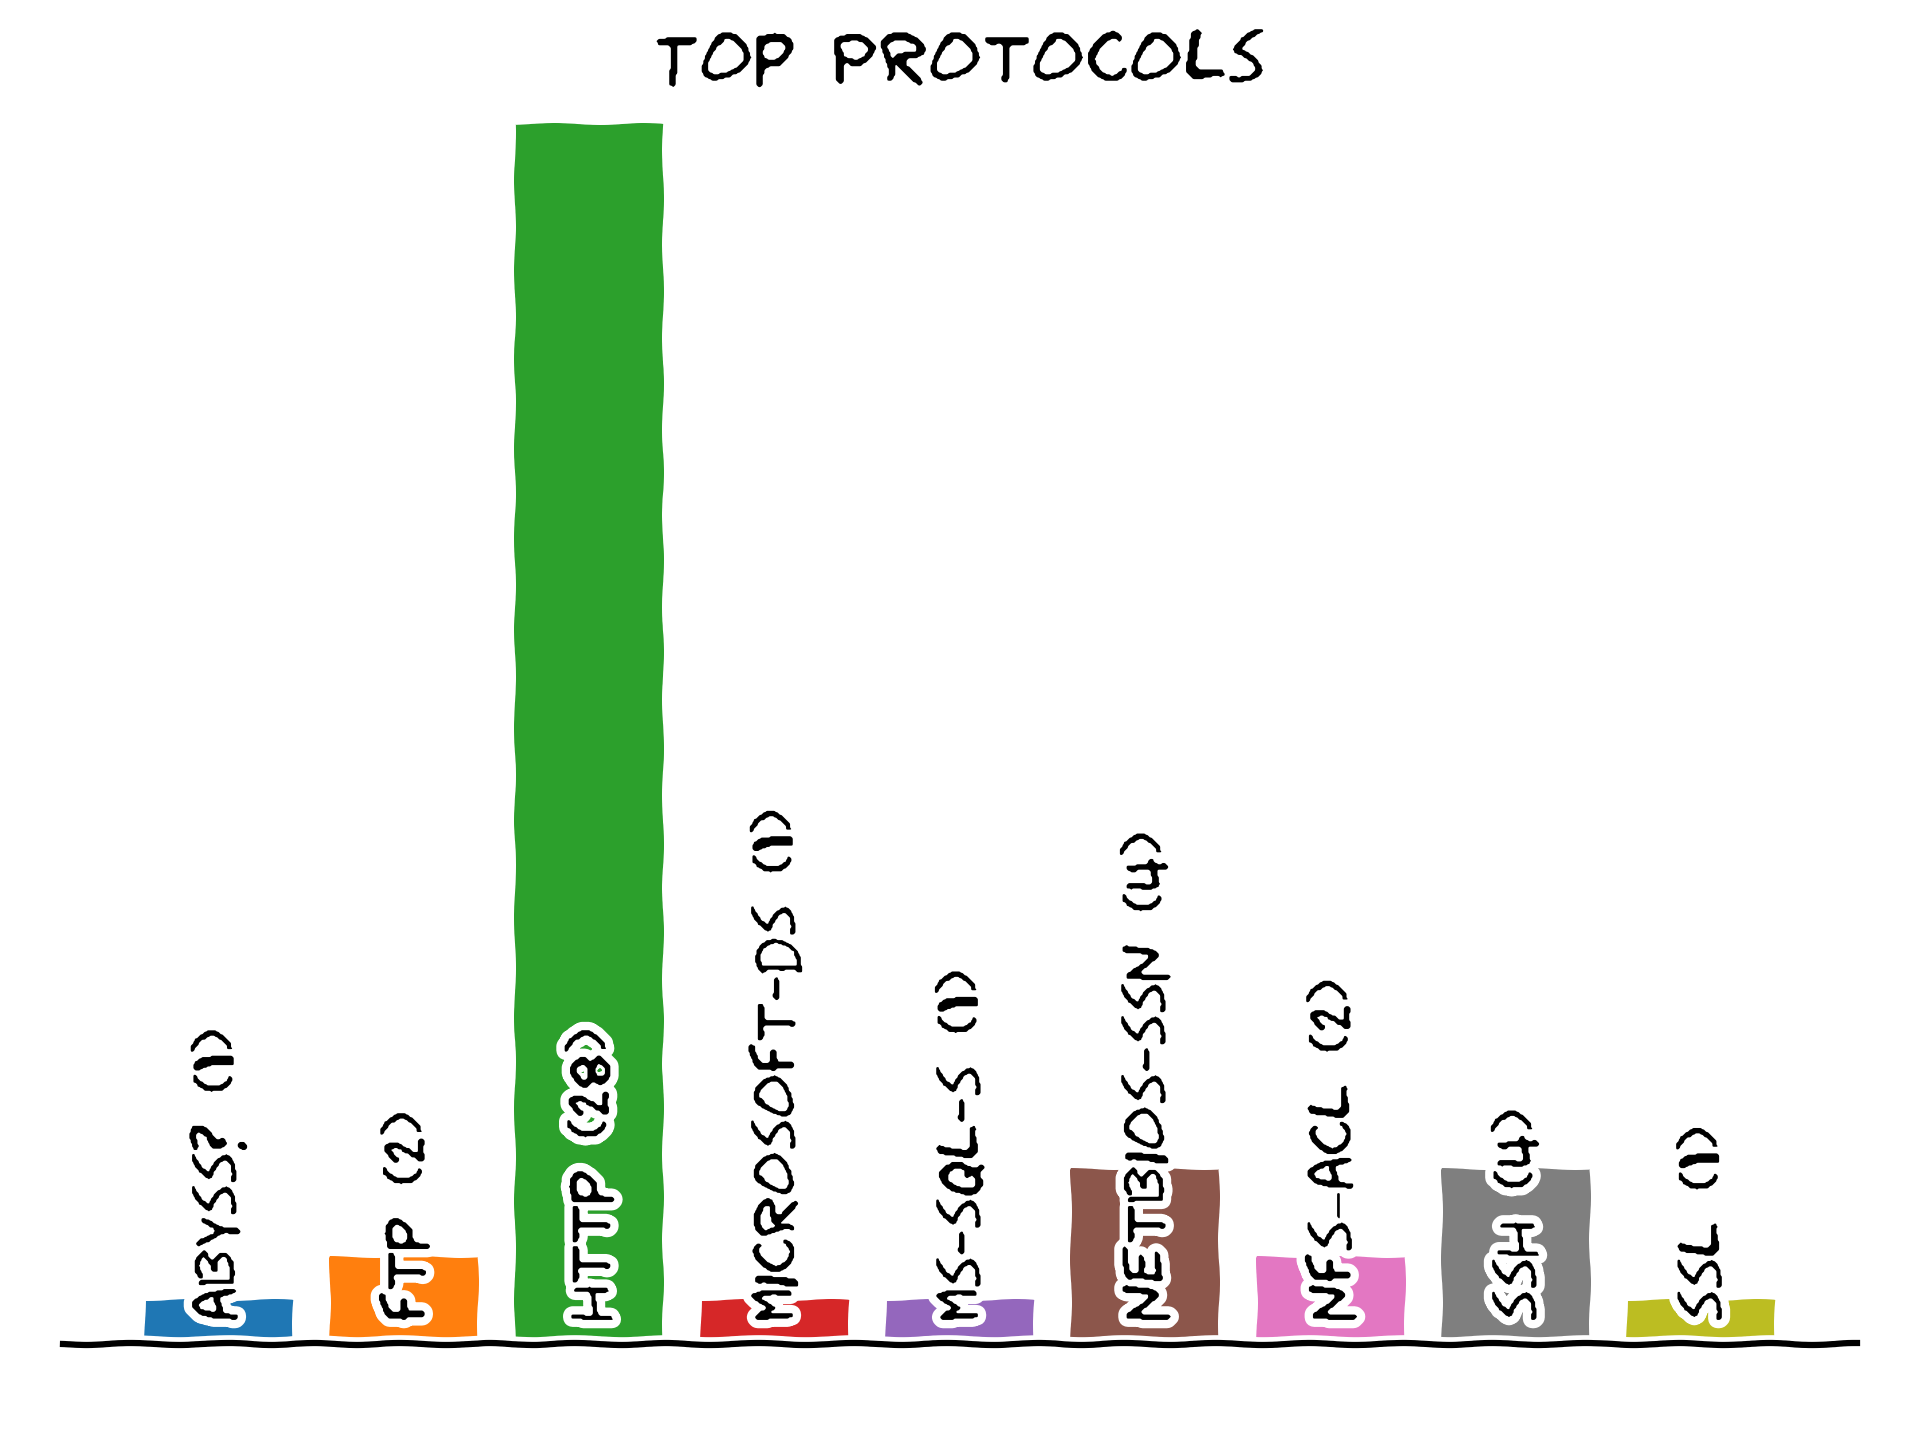 Top writeup protocols